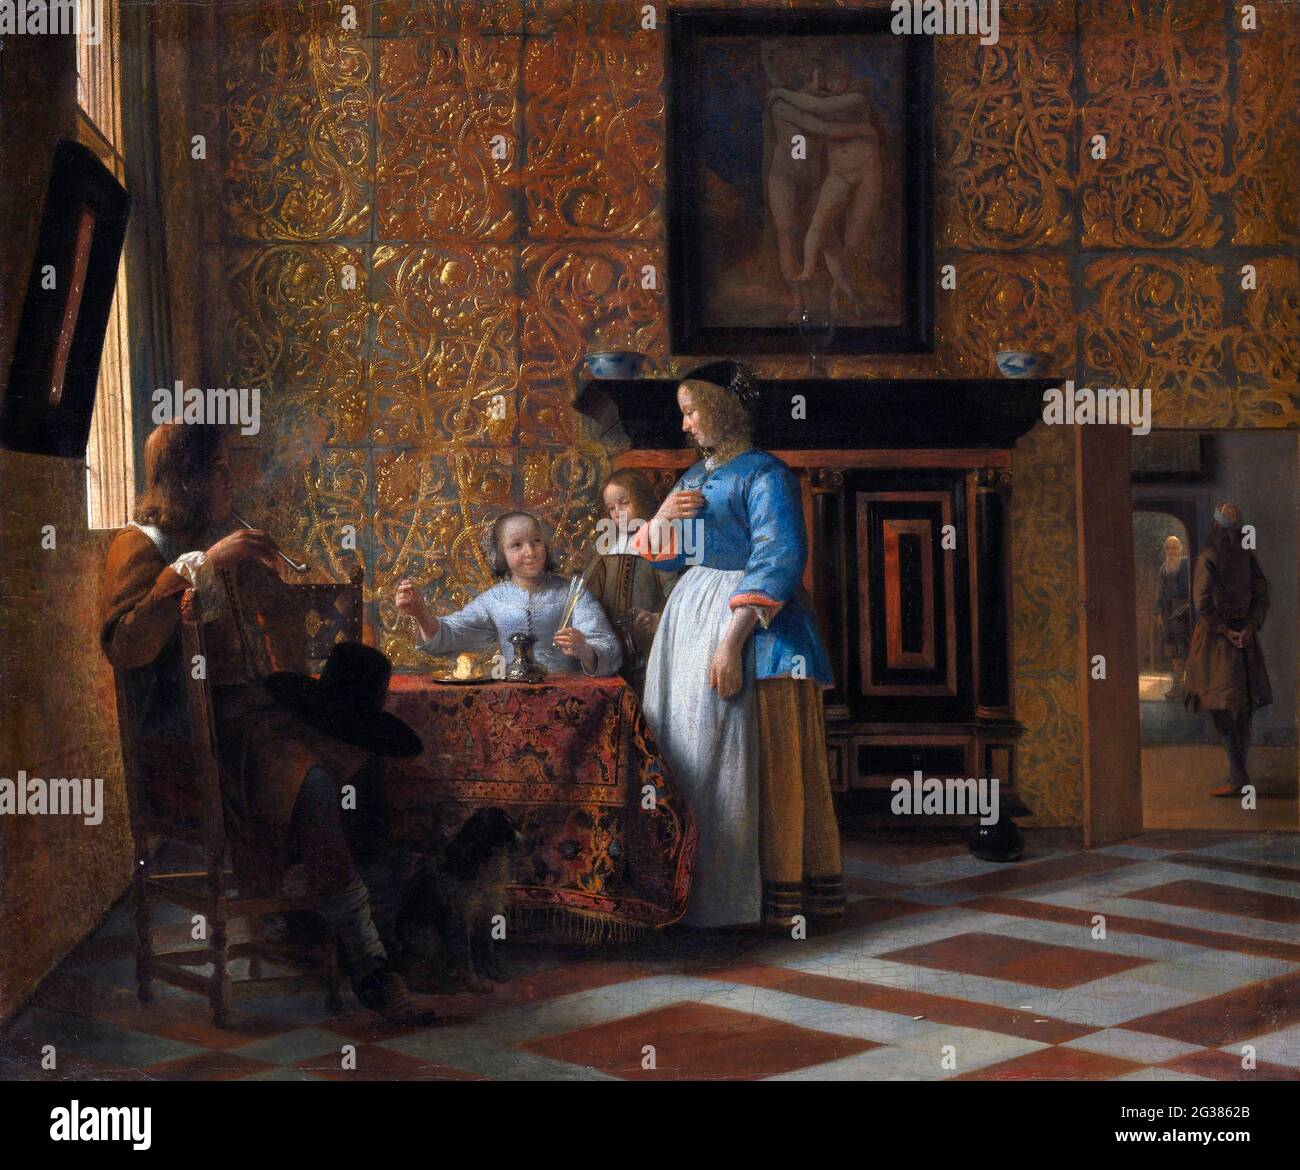 Pieter de Hooch. Tempo libero in un ambiente elegante dal pittore olandese dell'età dell'oro, Pieter de Hooch (1629-1684), olio su tela, c.. 1663-65 Foto Stock